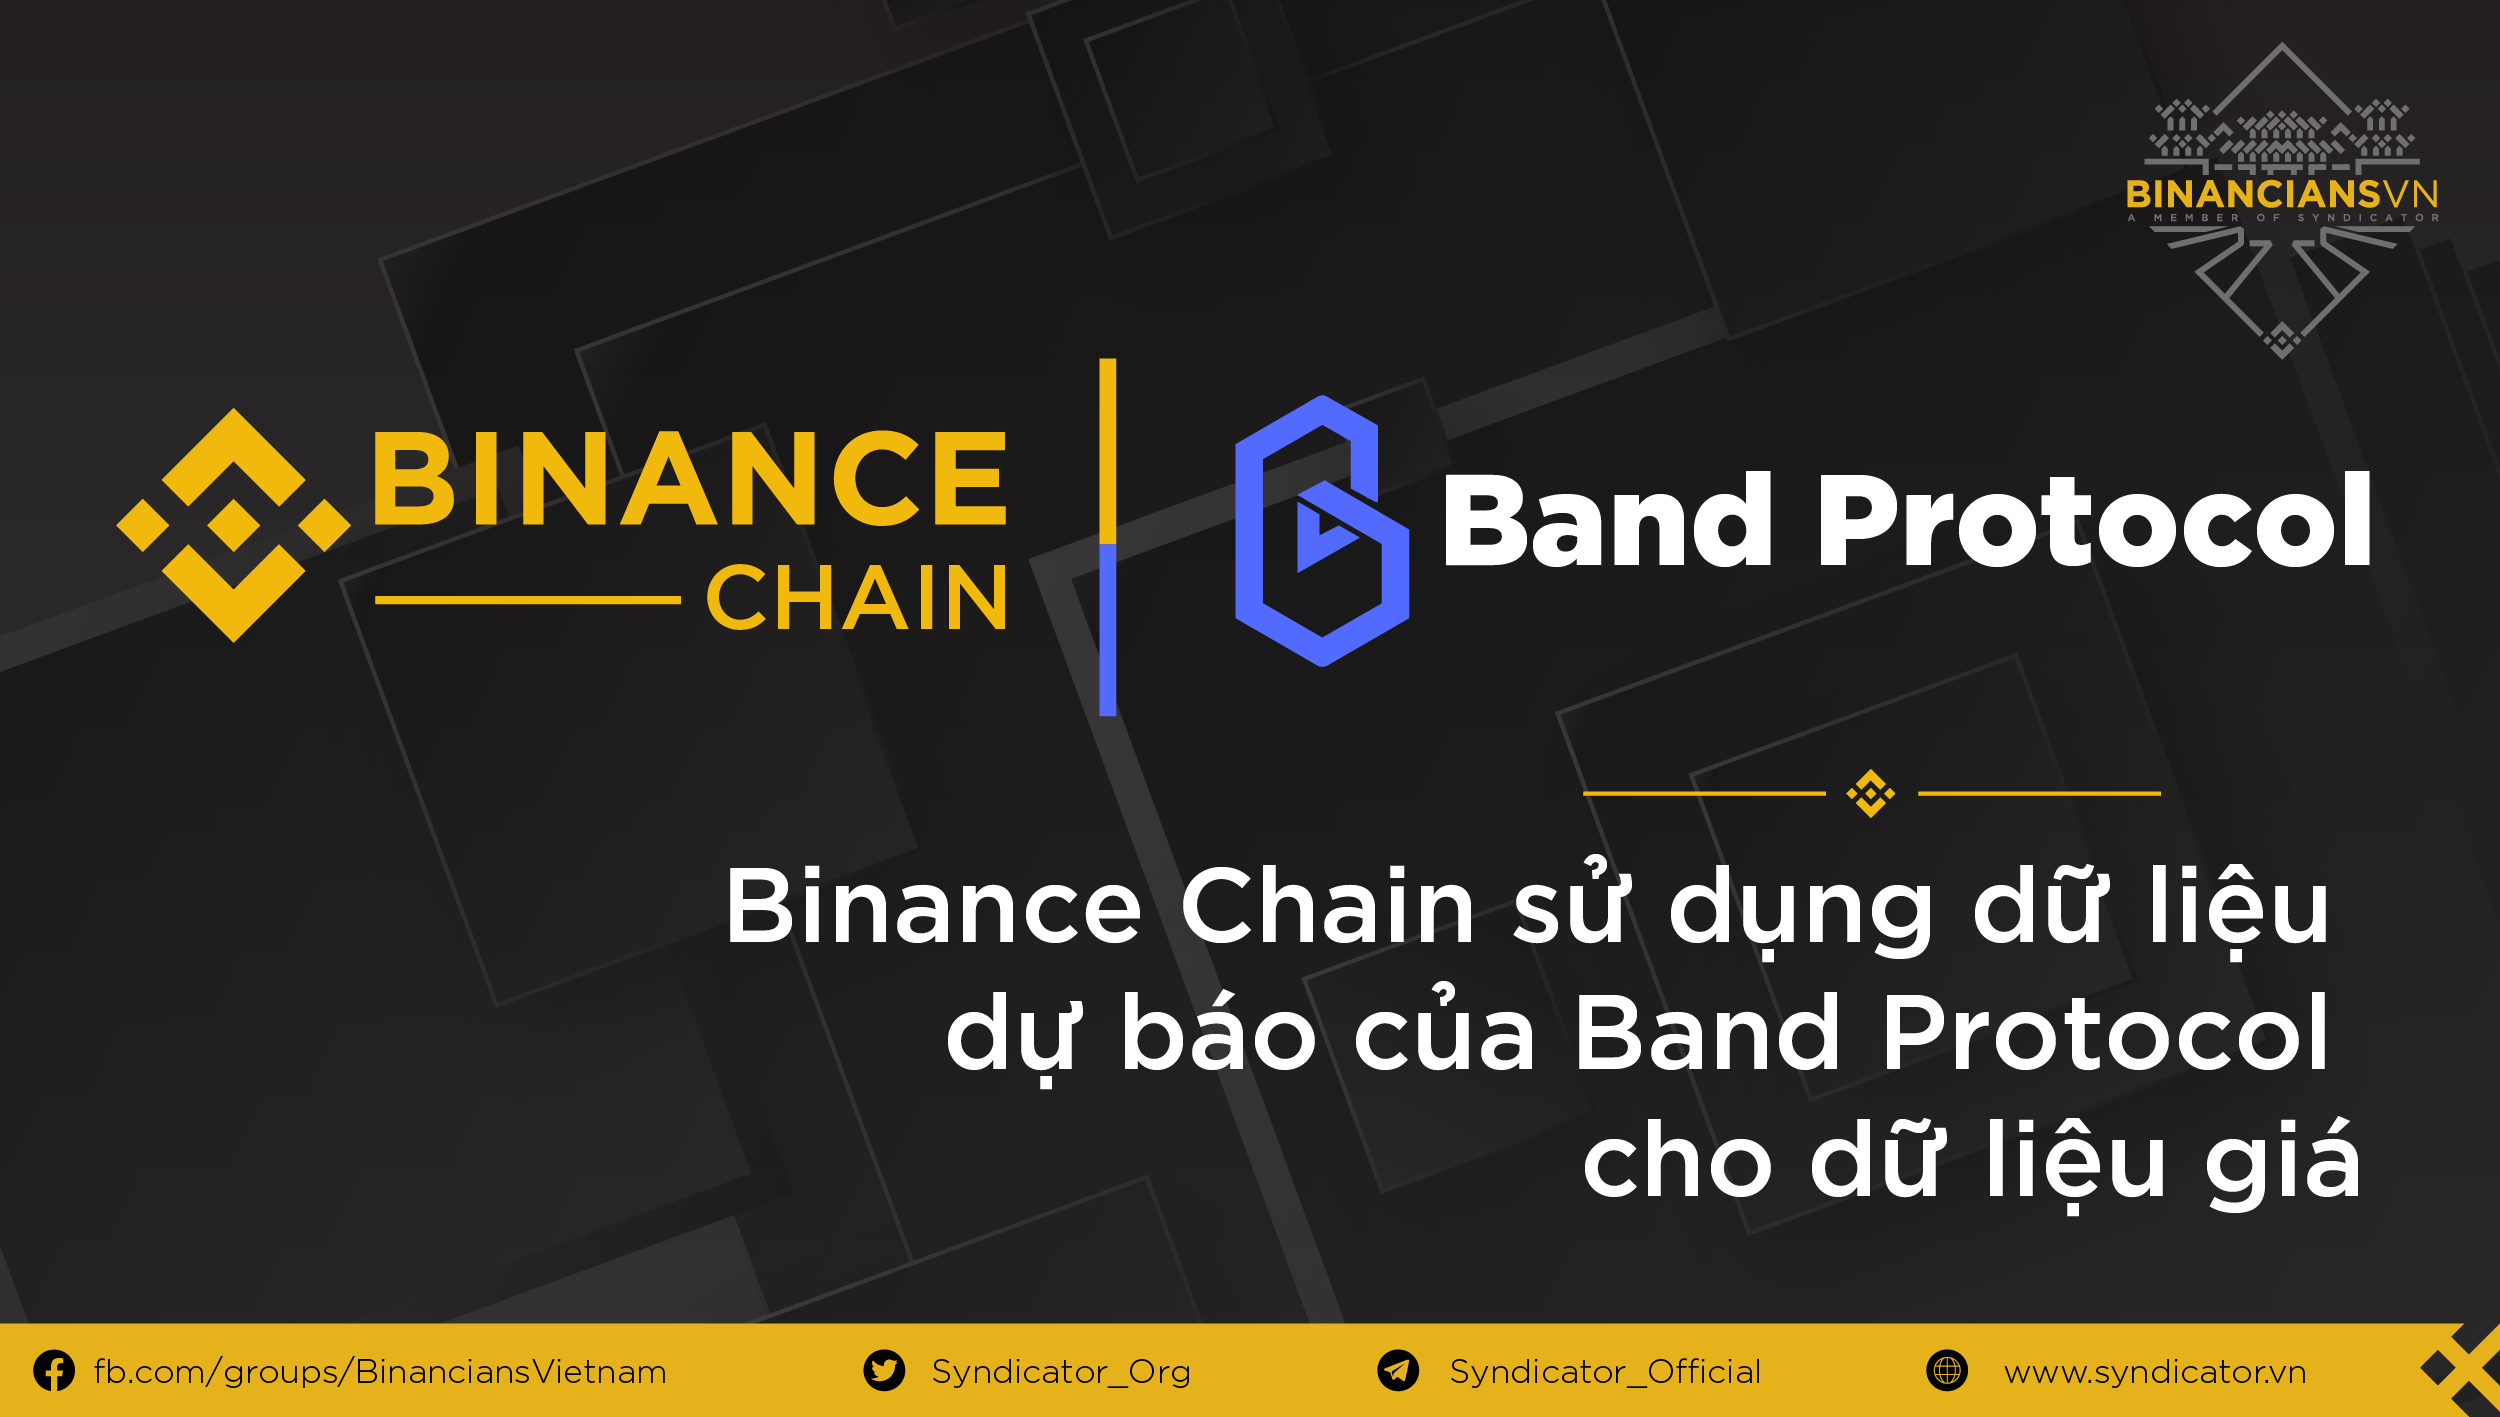 Binance Chain sử dụng dữ liệu dự báo của Band Protocol cho ...